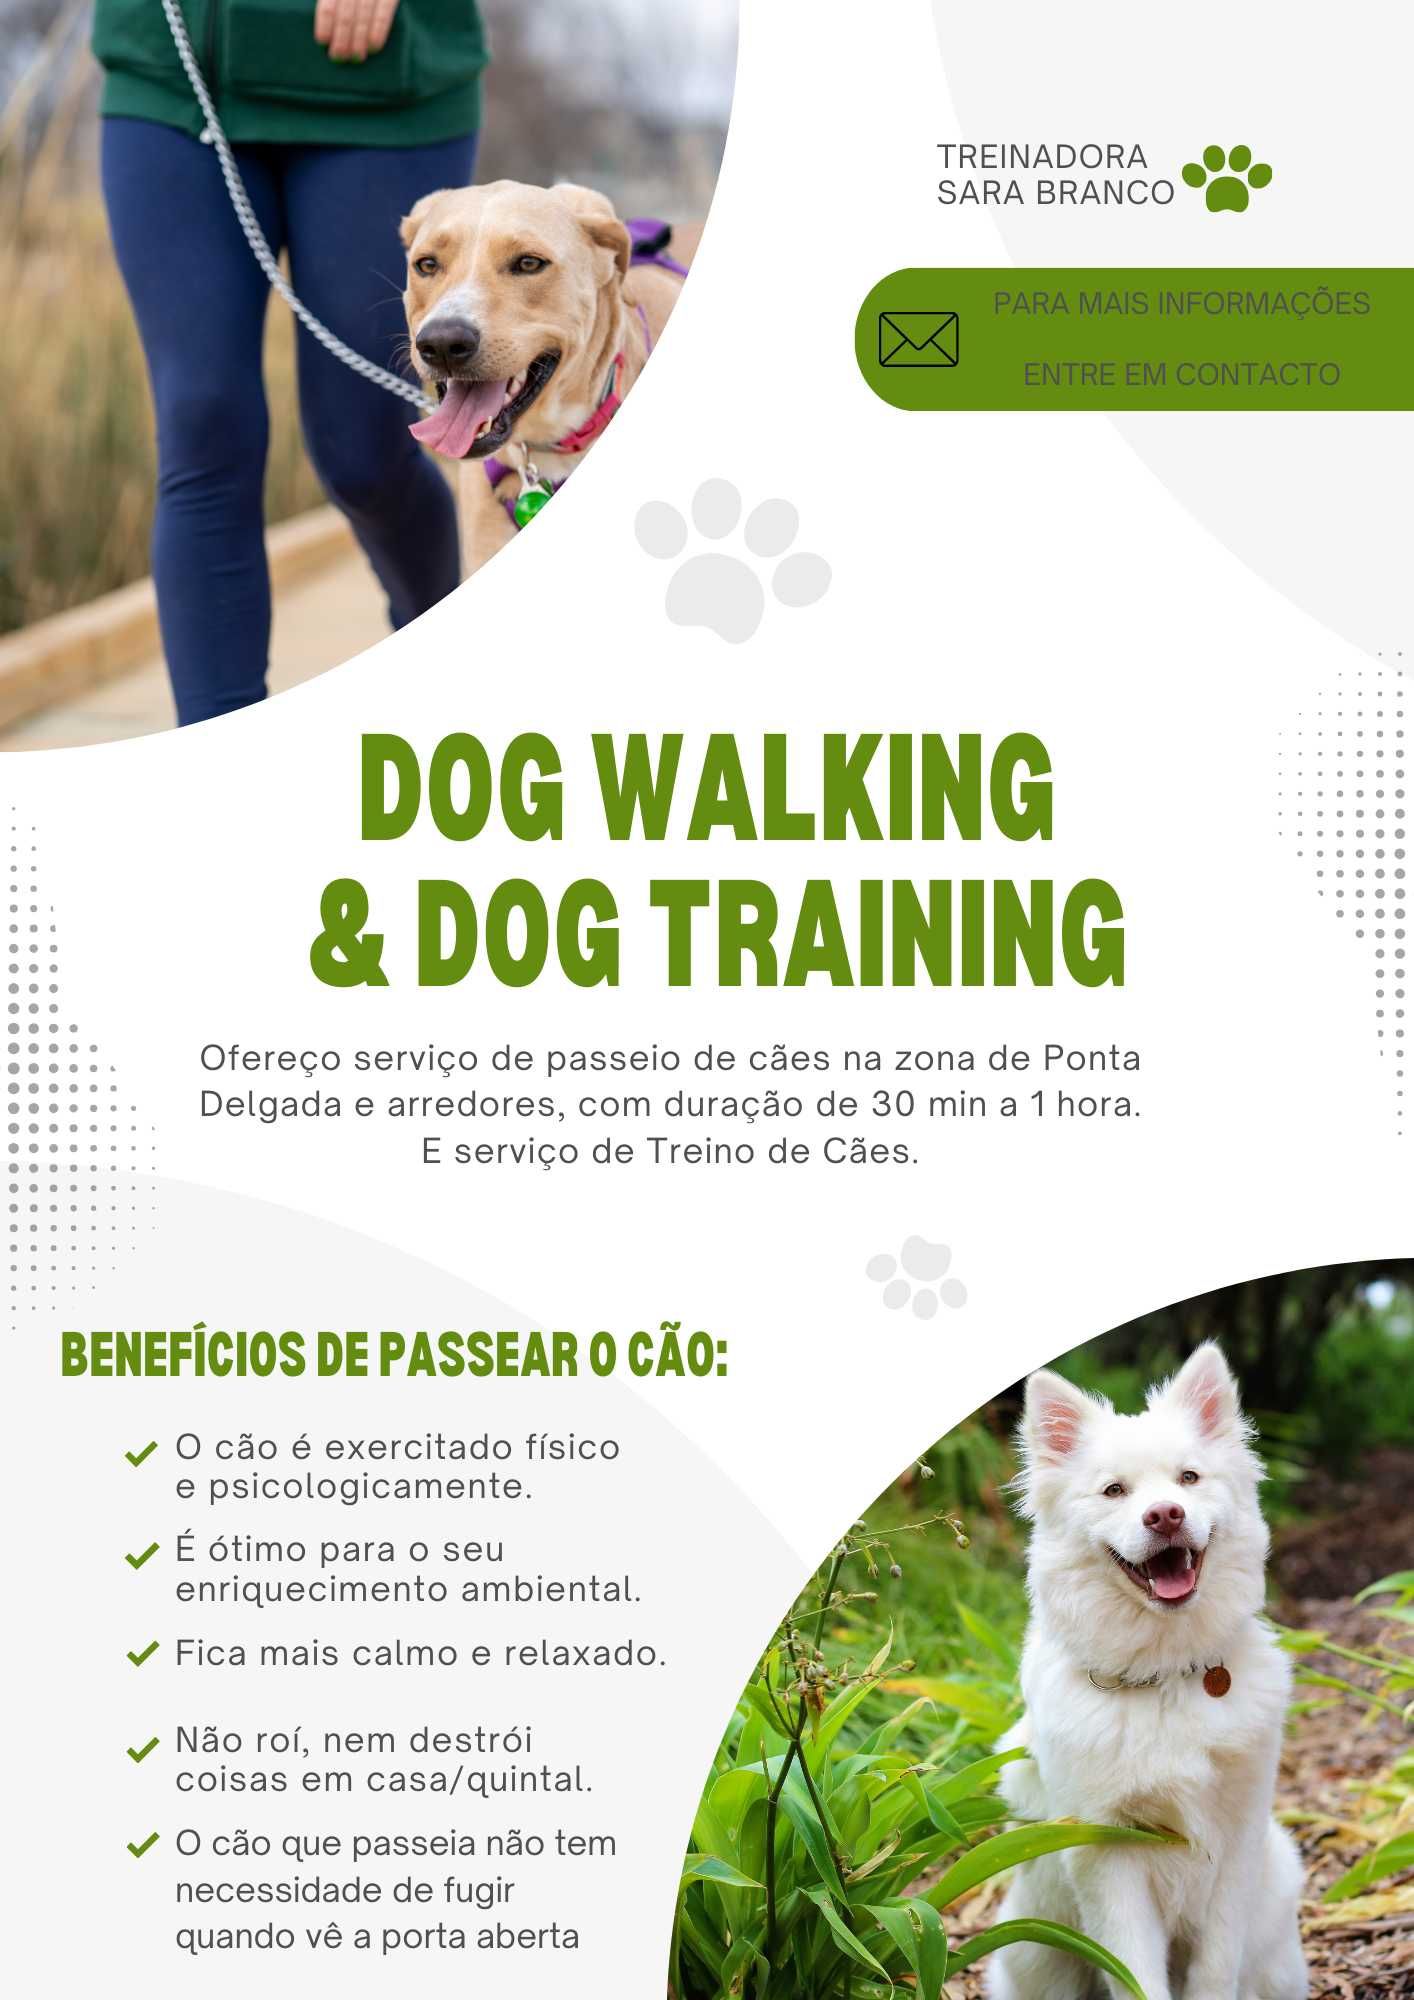 Treino canino e dog walking na Ilha de São Miguel